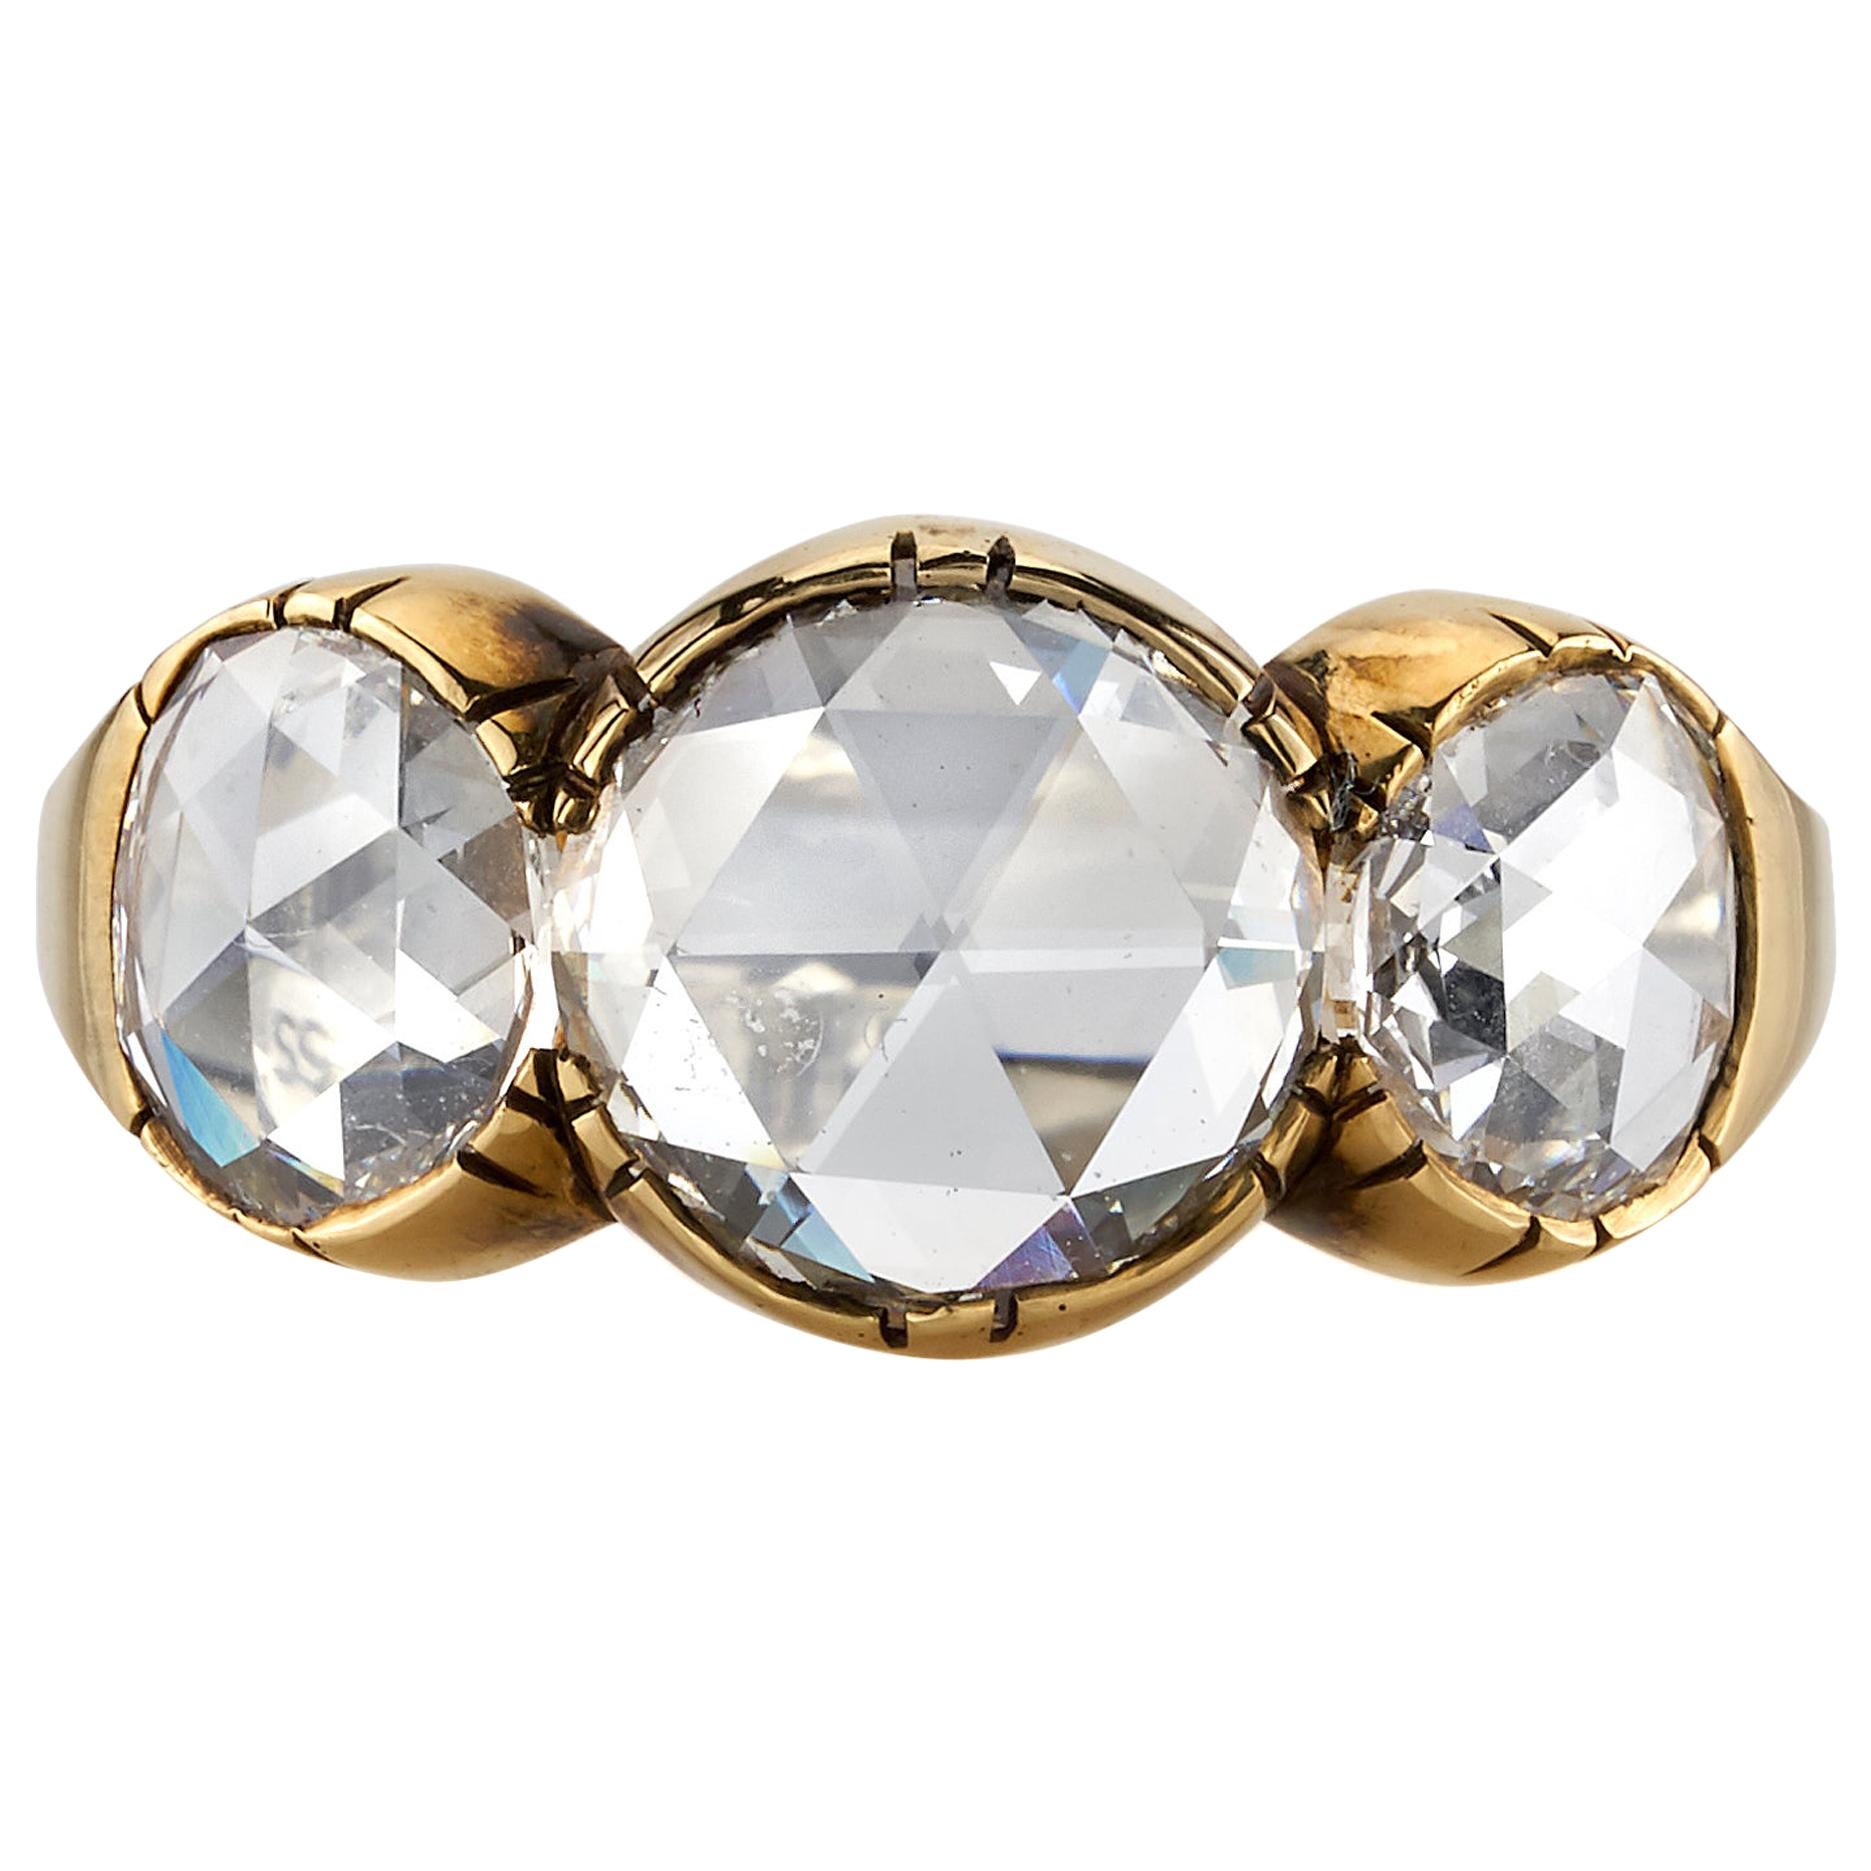 2.55 Carat GIA Certified Rose Cut Diamonds Set in an 18 Karat Oxidized Gold Ring